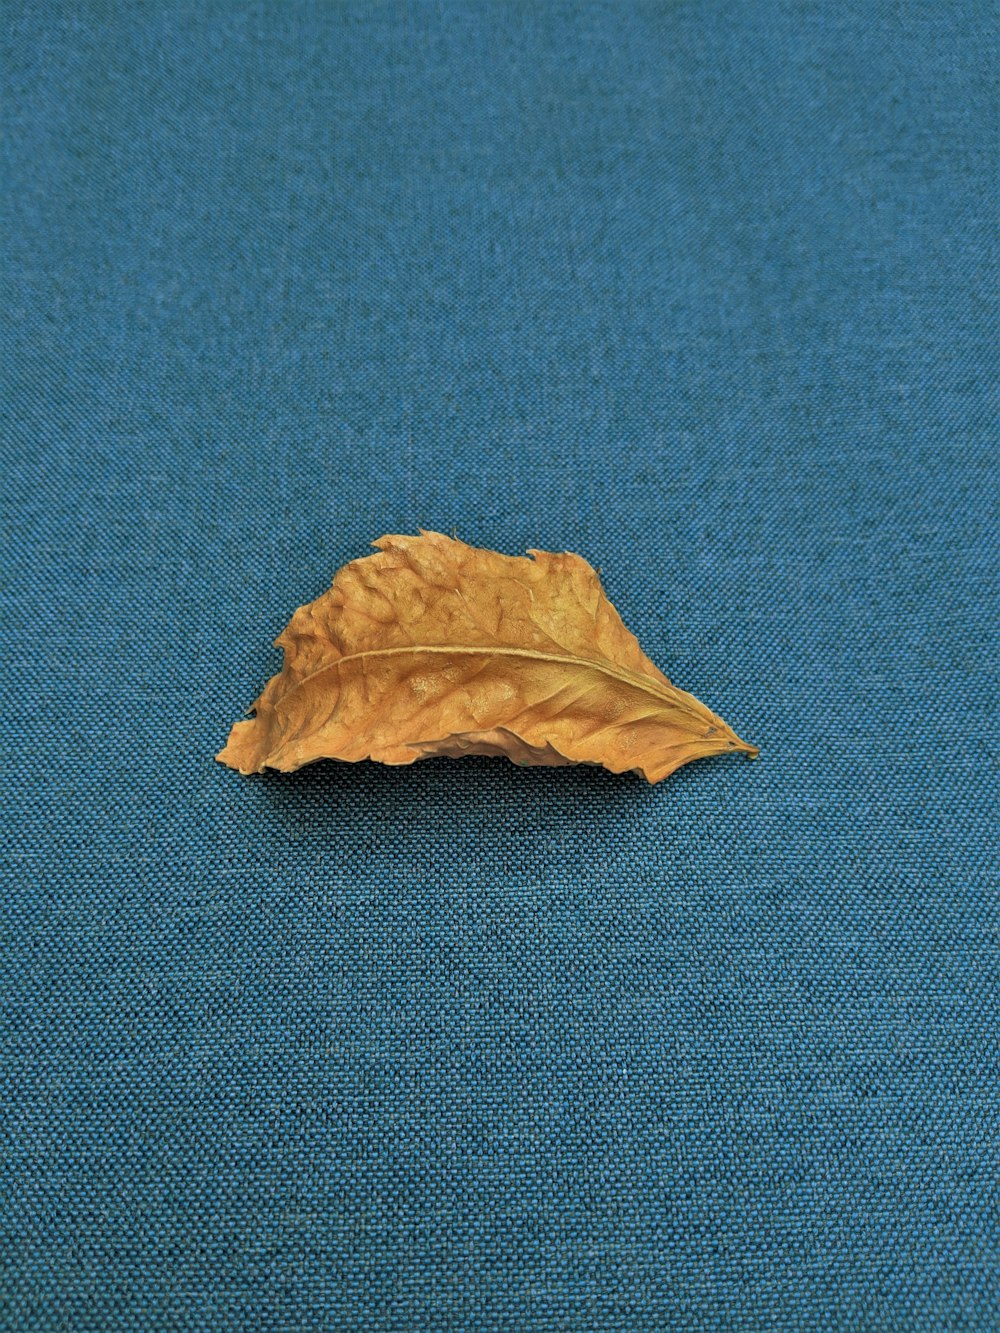 brown leaf on blue textile